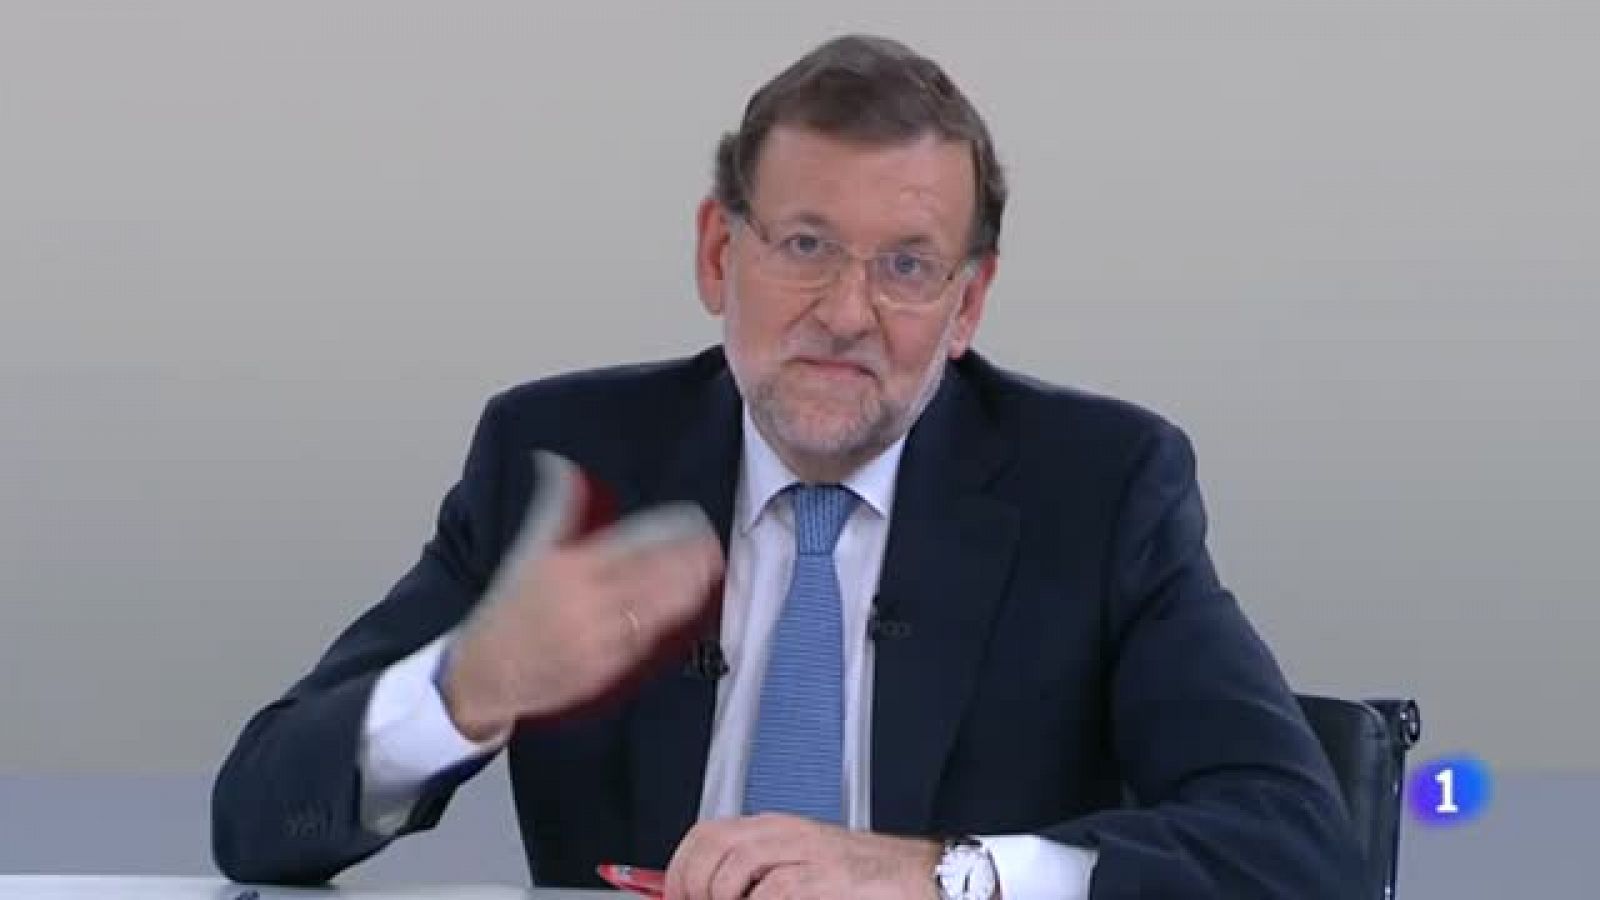 Minuto final: Rajoy compromete "estabilidad" y "certidumbre"